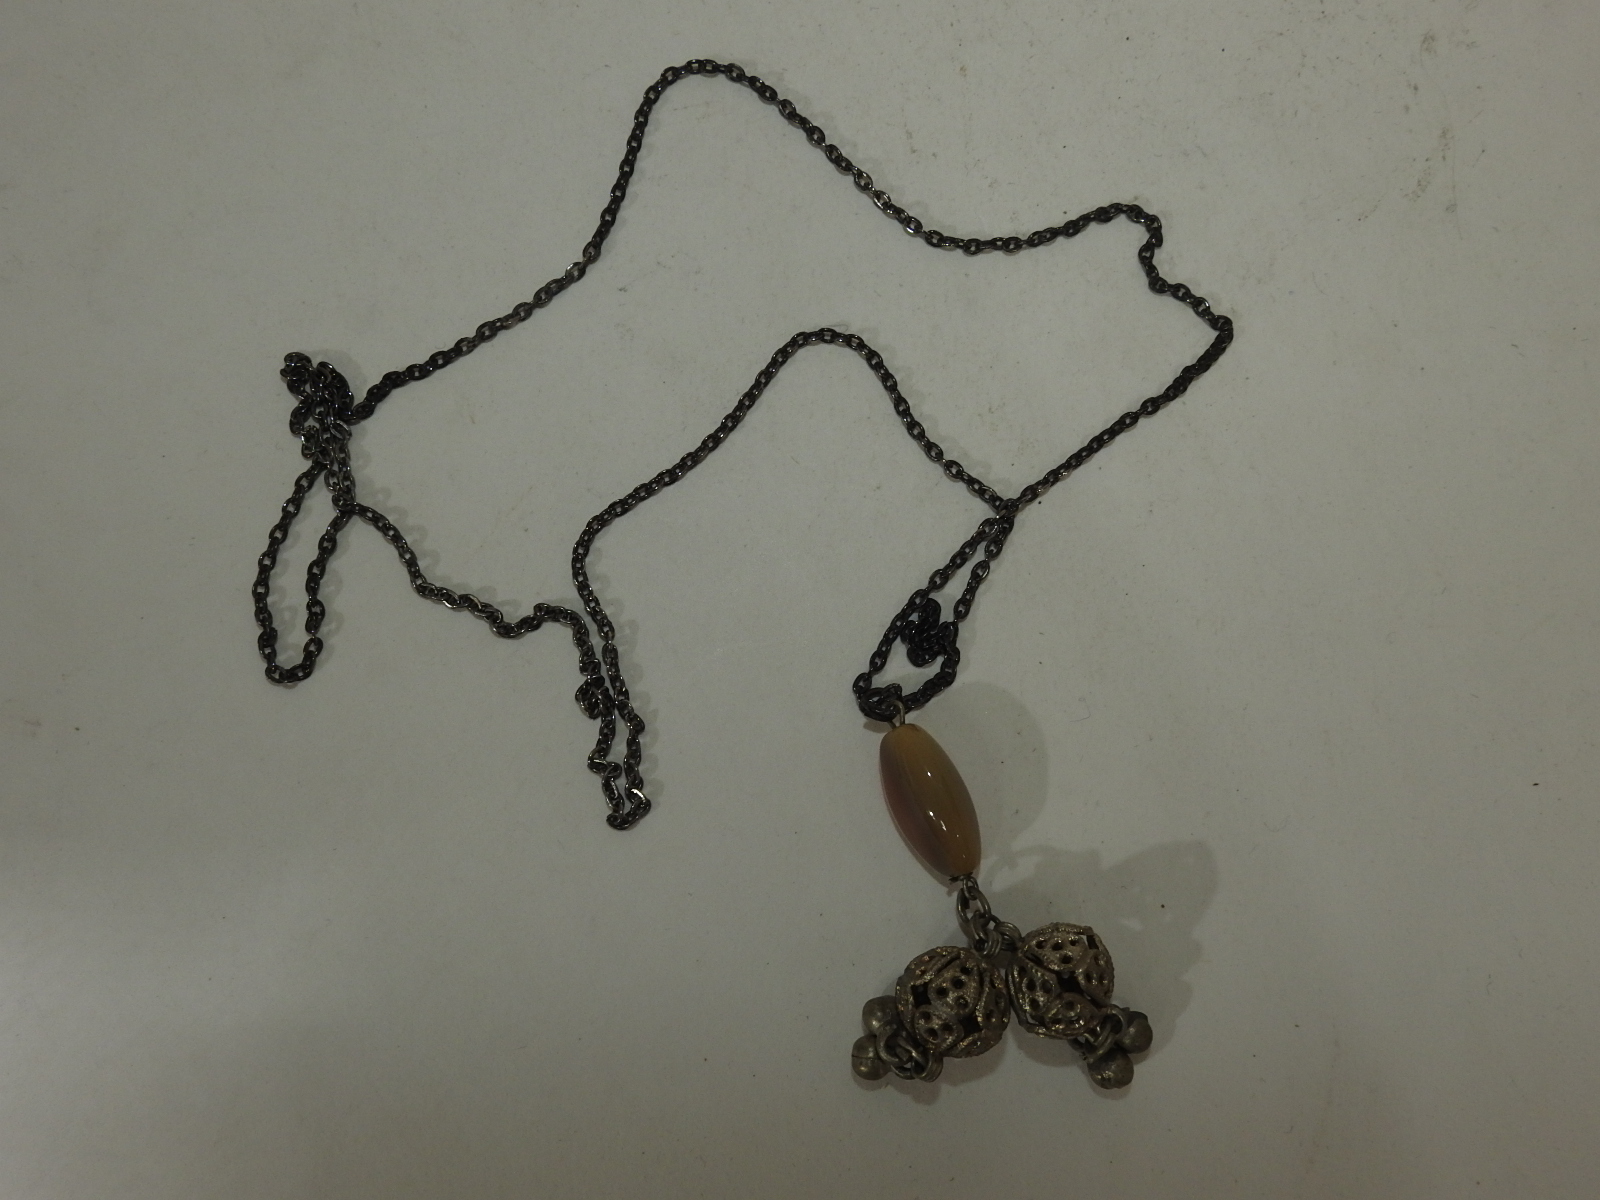 마노옥돌과 금속추로 장식된 목걸이